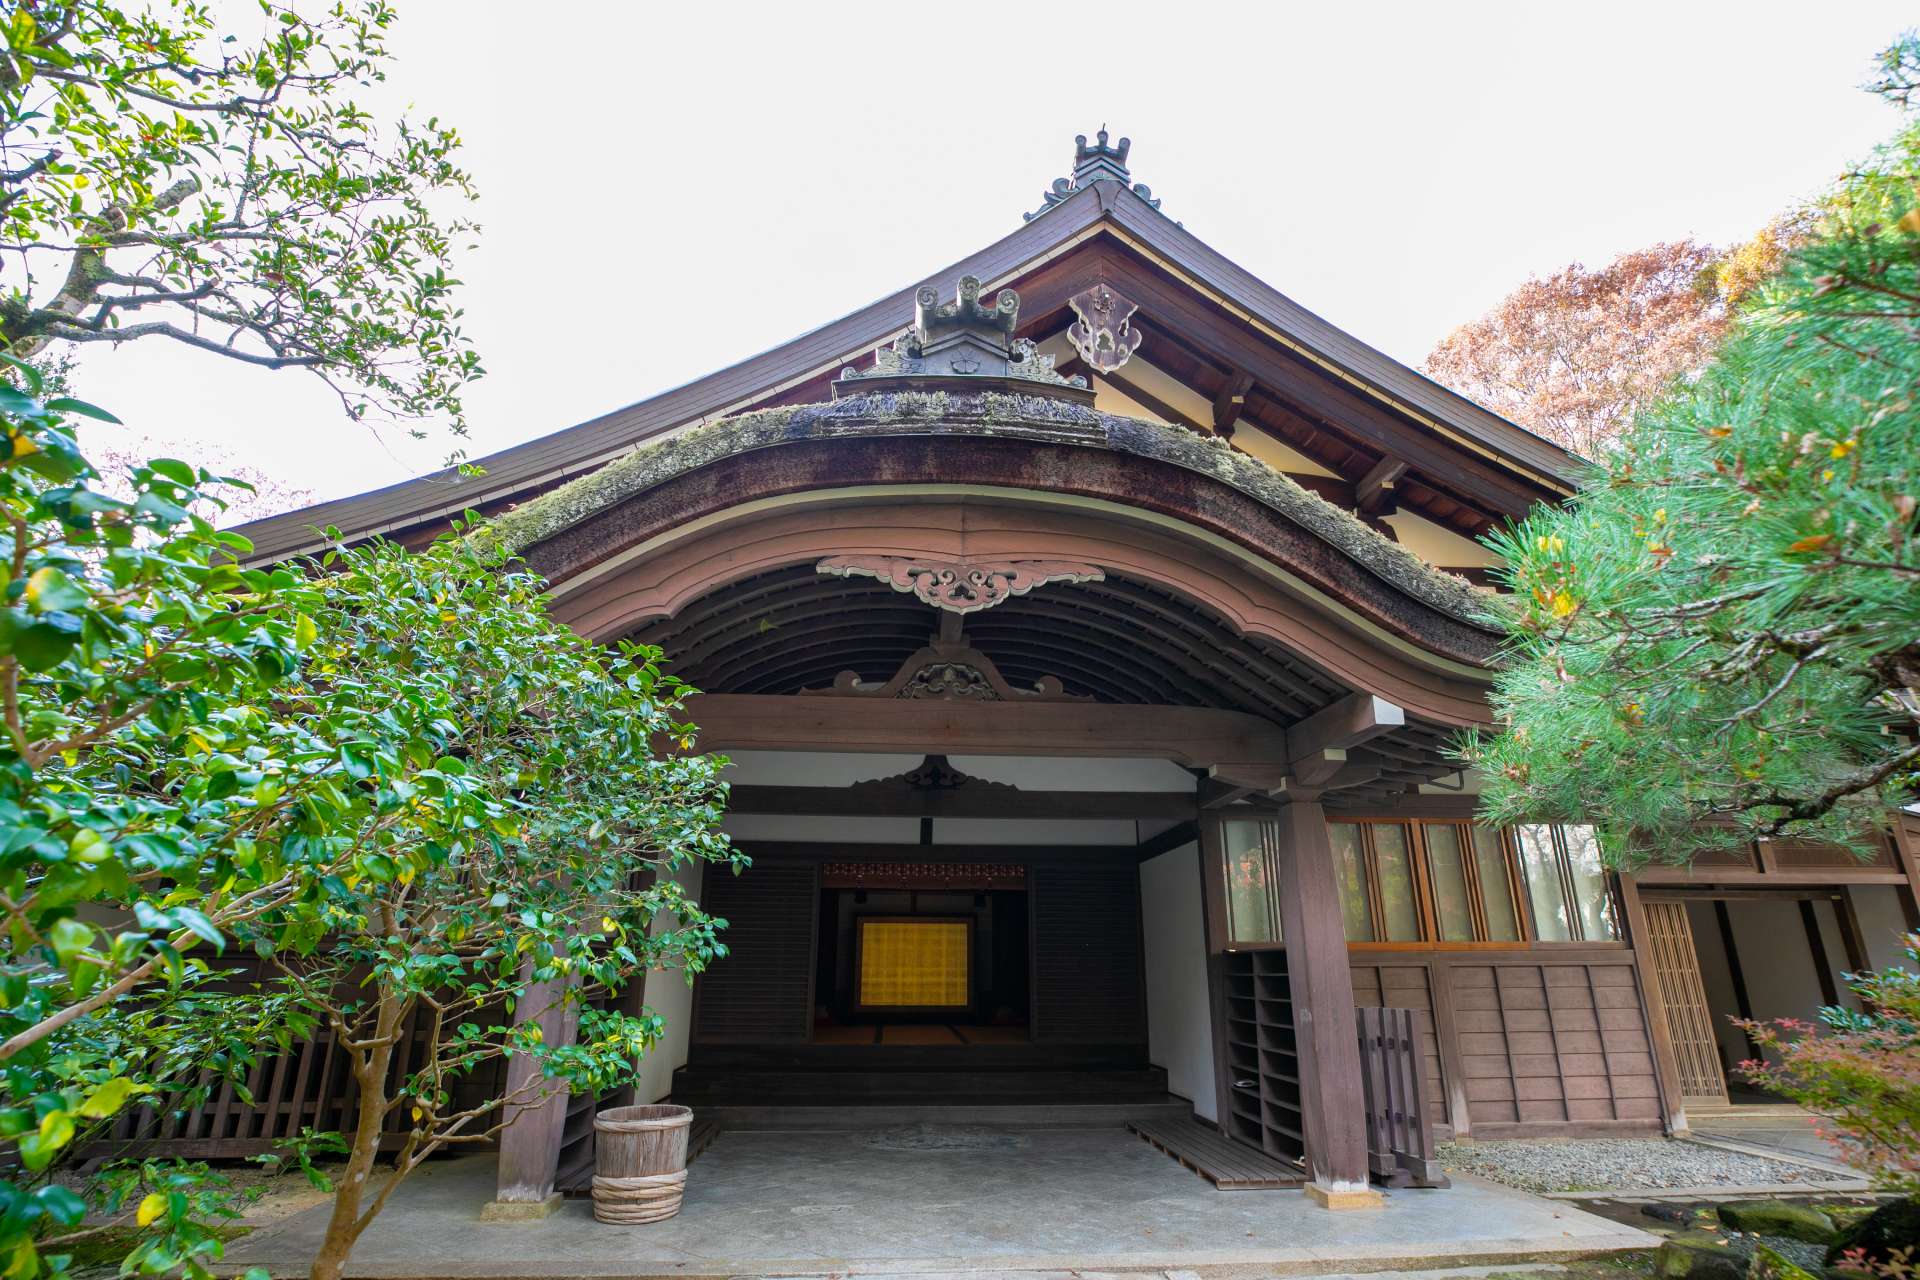 Chisenkaku se encuentra al norte de Zaodo. Caracterizado por una espléndida librería estilo irimoya